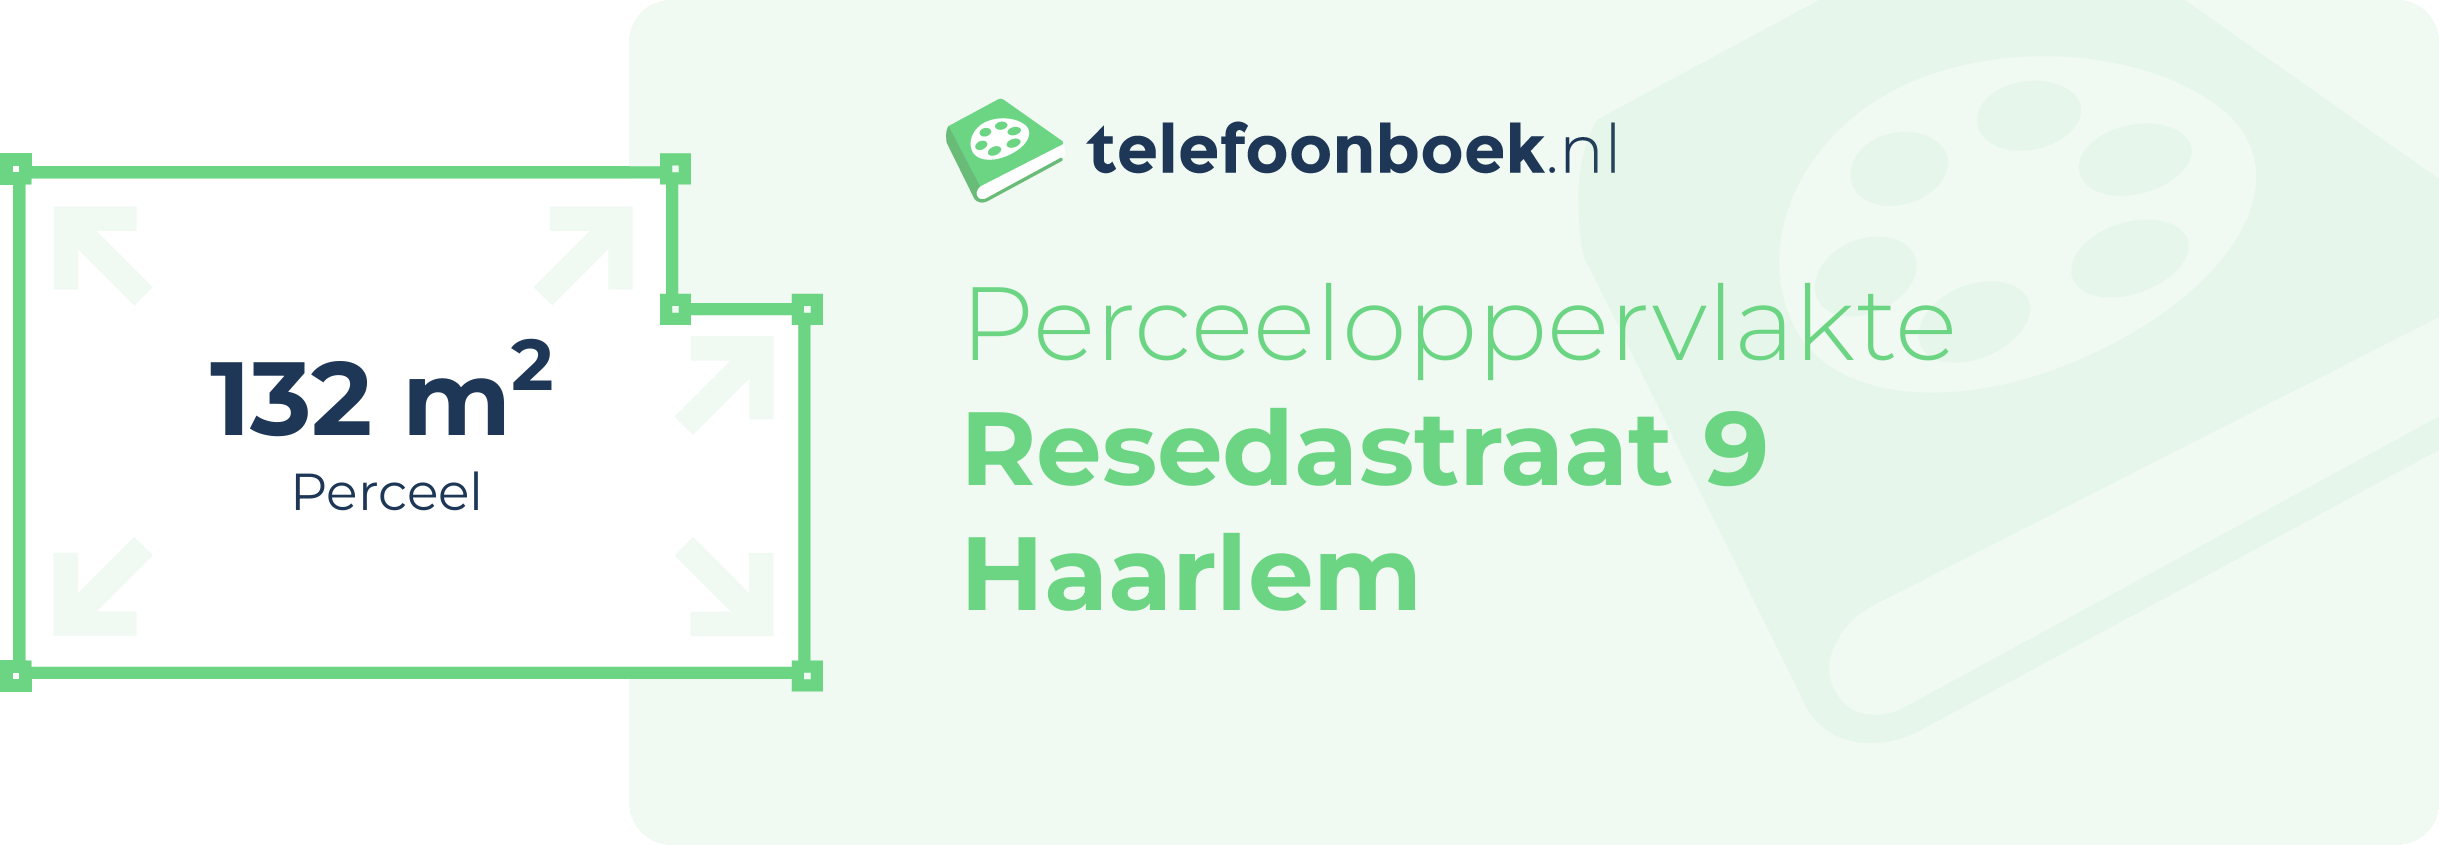 Perceeloppervlakte Resedastraat 9 Haarlem